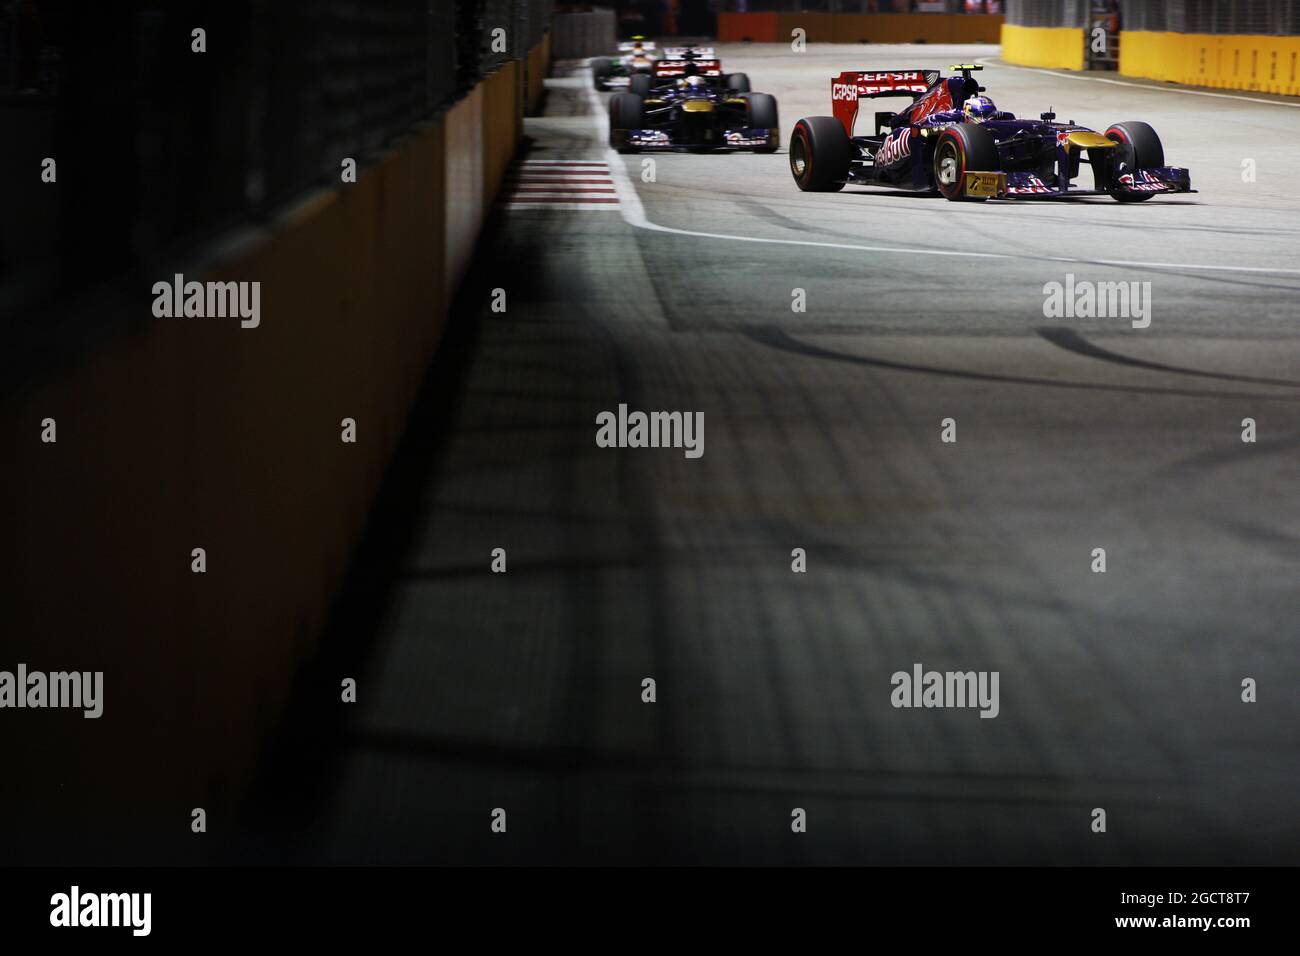 Daniel Ricciardo (AUS) Scuderia Toro Rosso STR8. Gran Premio di Singapore, domenica 22 settembre 2013. Circuito Marina Bay Street, Singapore. Foto Stock